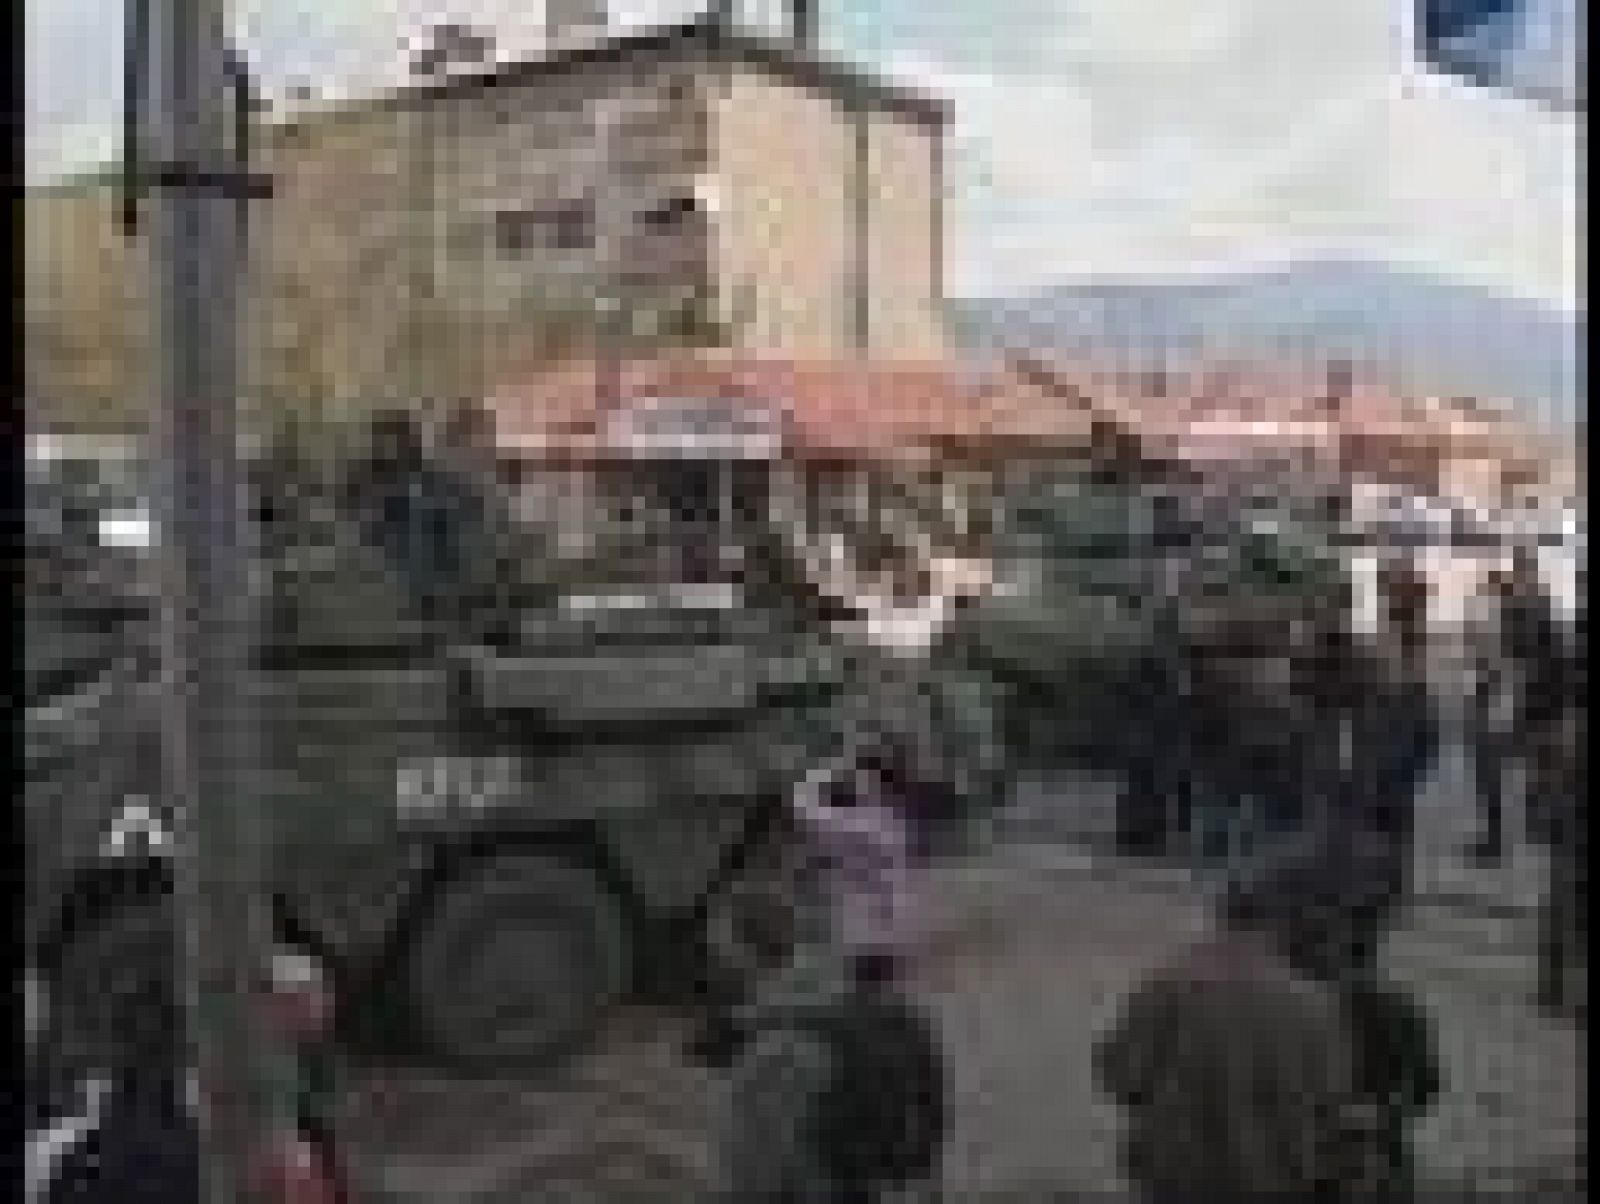 Tropas españolas tripulan las calles de la ciudad kosovar de Mitrovica tras los disturbios desatados el 17 de marzo.